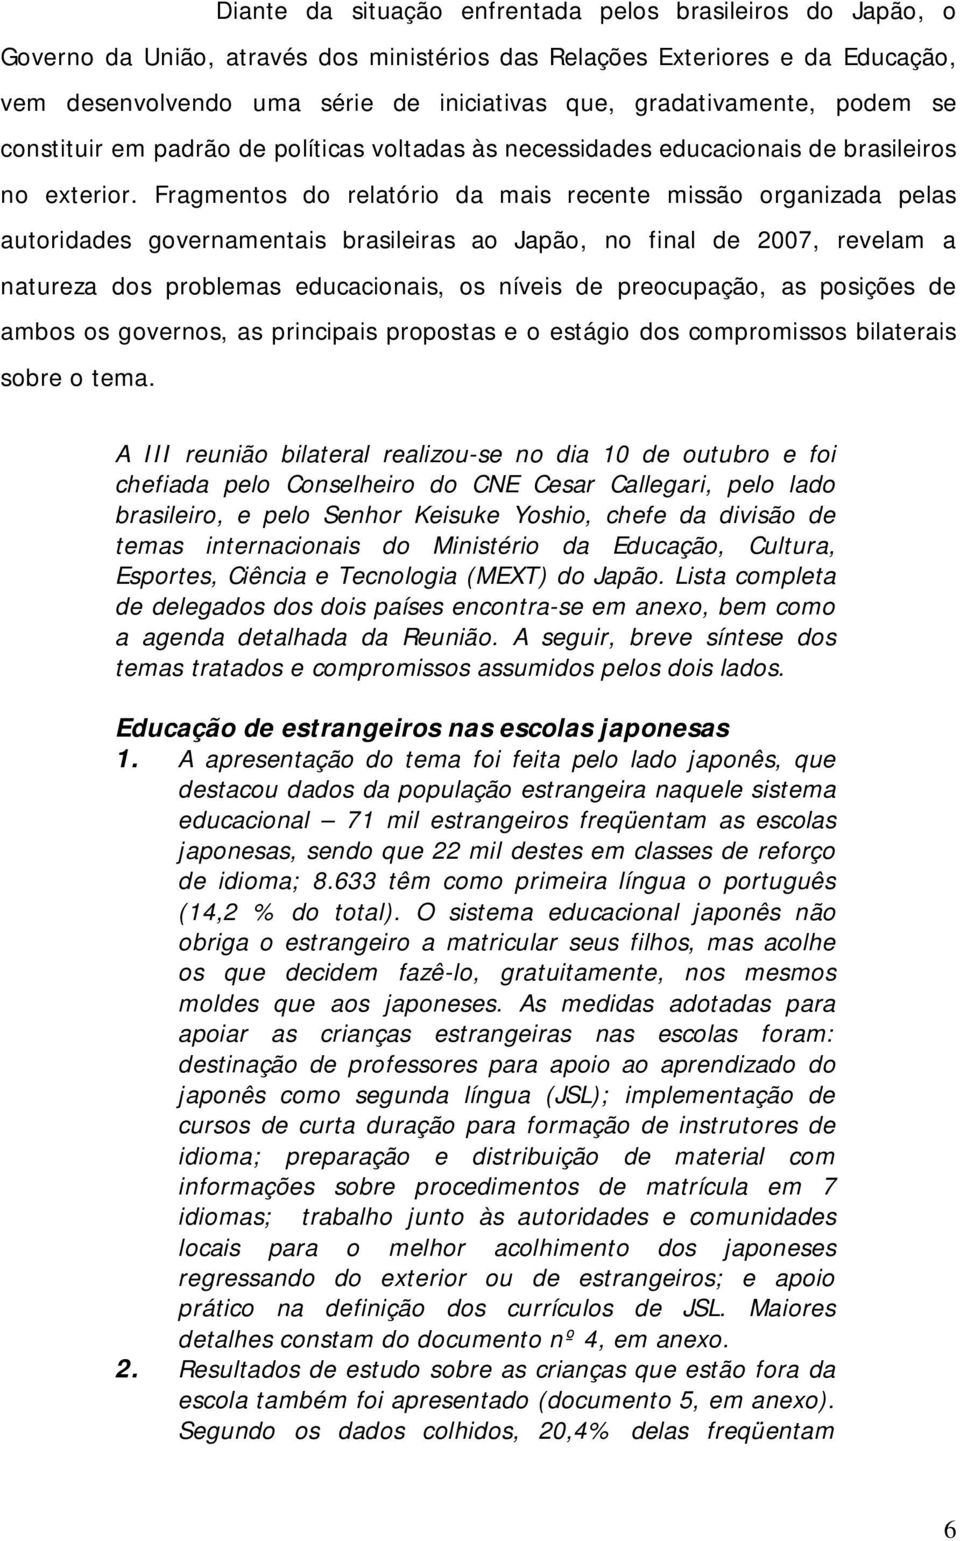 Fragmentos do relatório da mais recente missão organizada pelas autoridades governamentais brasileiras ao Japão, no final de 2007, revelam a natureza dos problemas educacionais, os níveis de